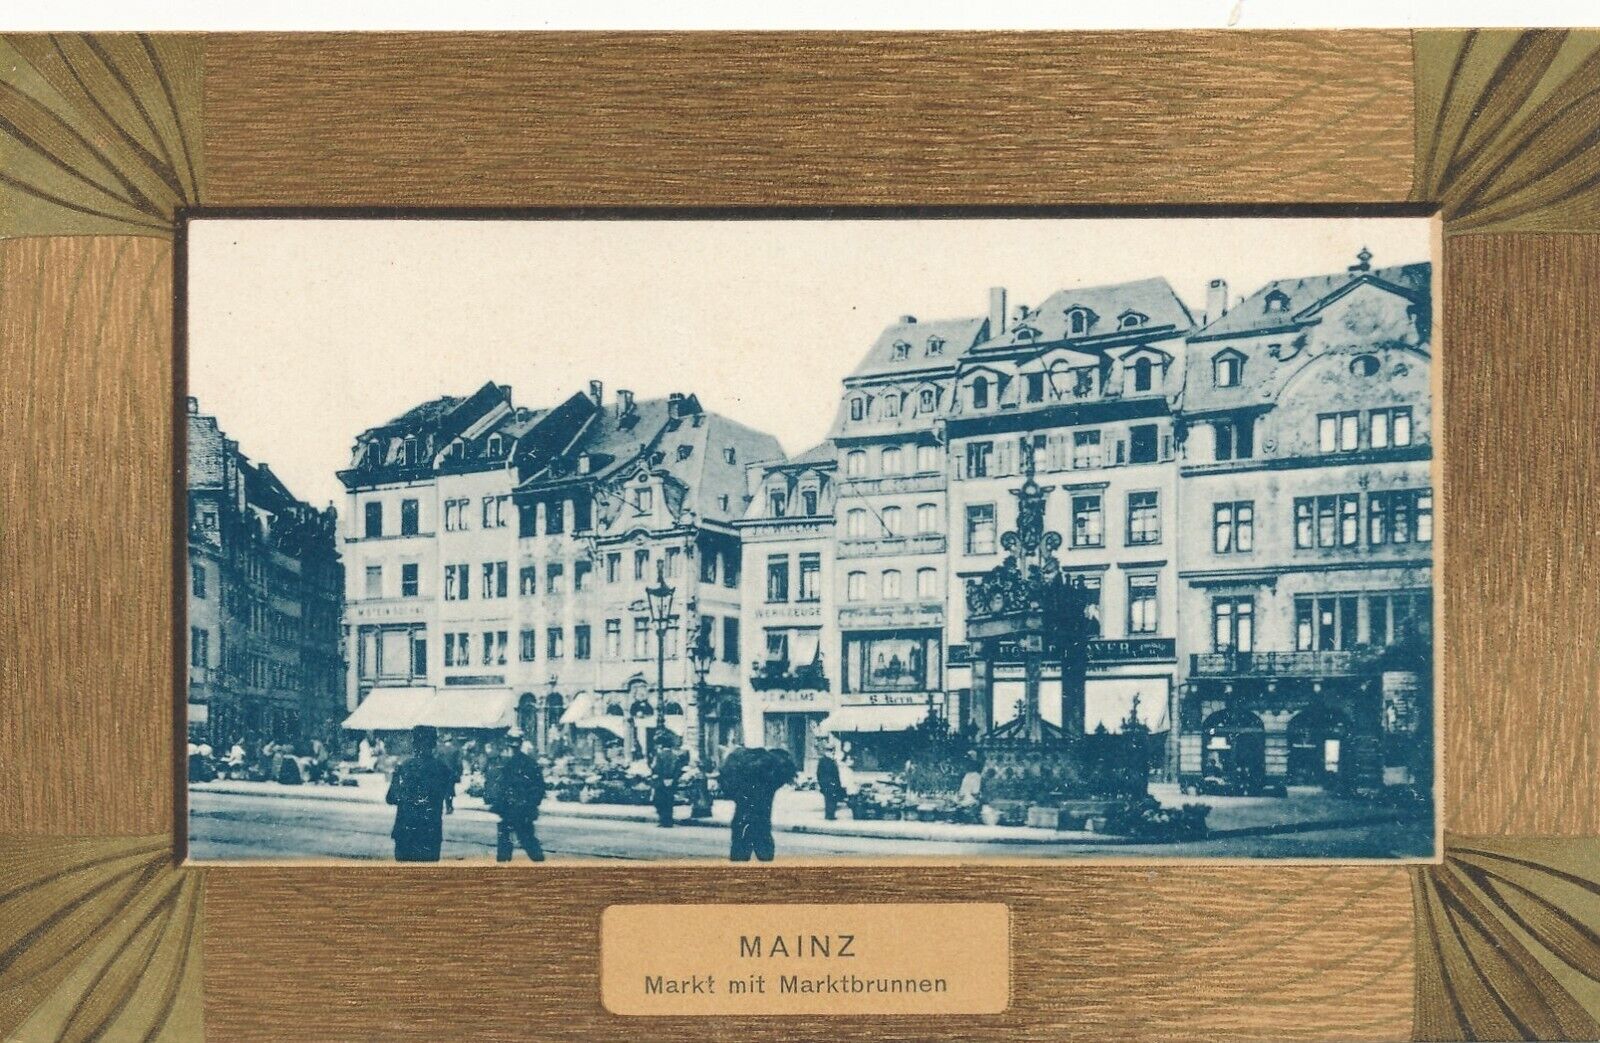 MAINZ – Markt mit Marktbrunnen – Germany